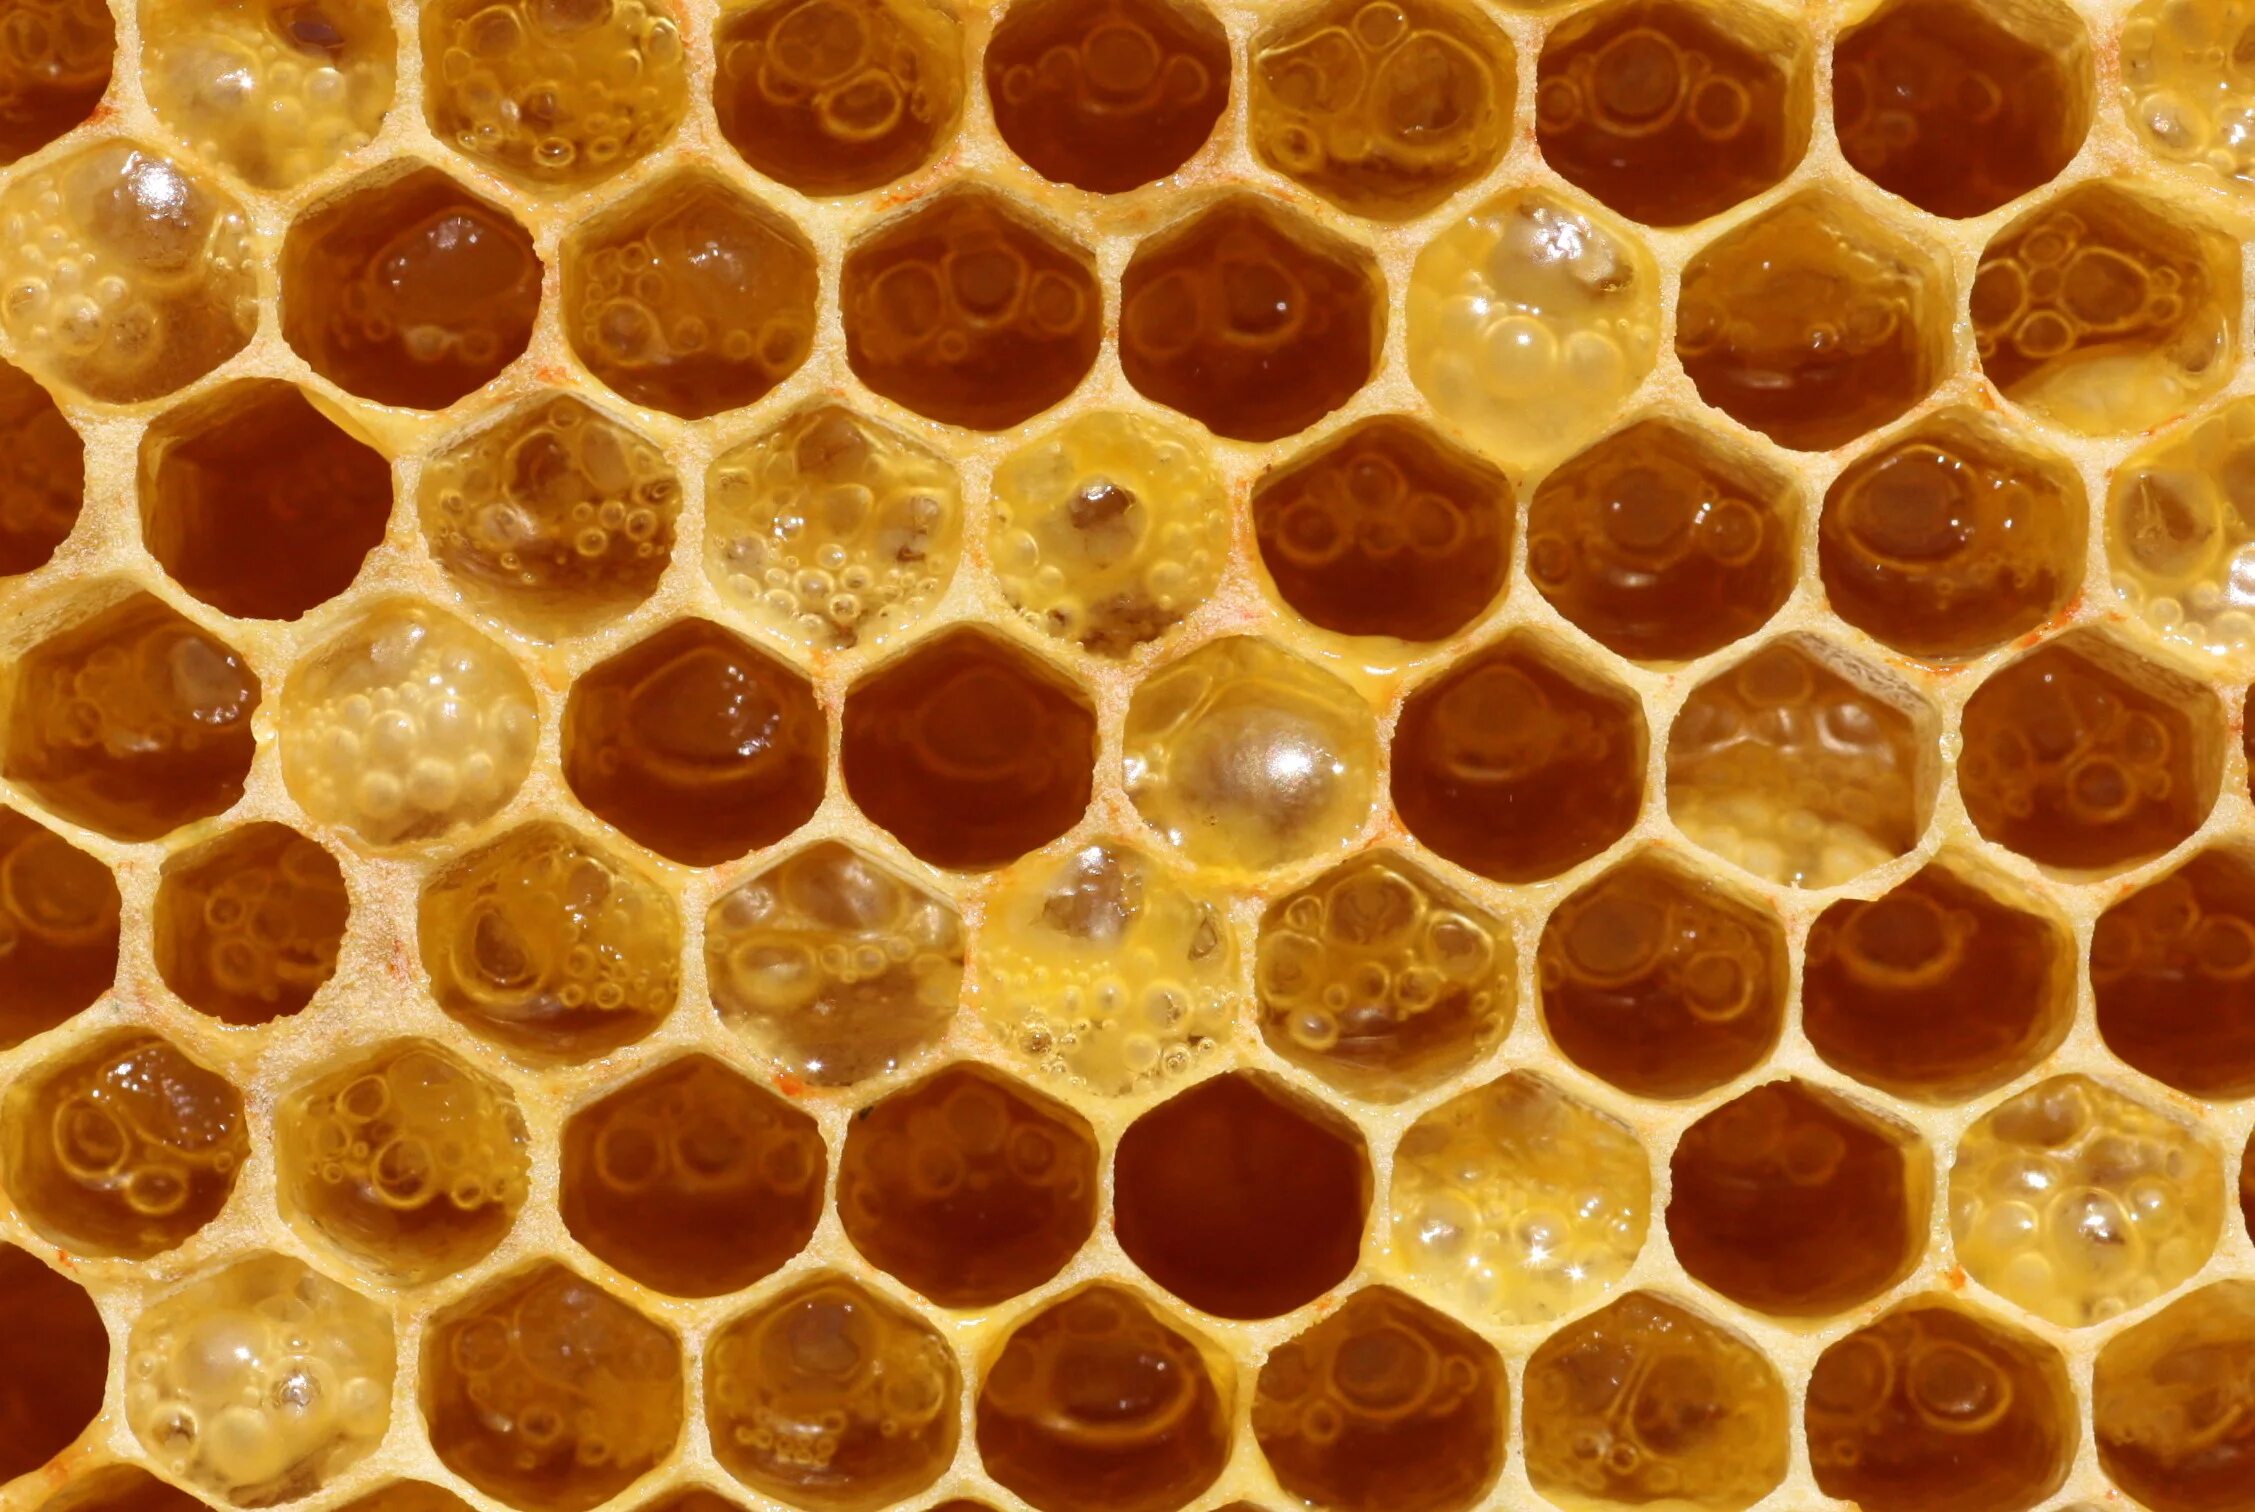 Honey медовый. Забрус пчелиный. Пчелиное маточное молочко (Королевское желе). Соты пчелиные. Медовые соты.